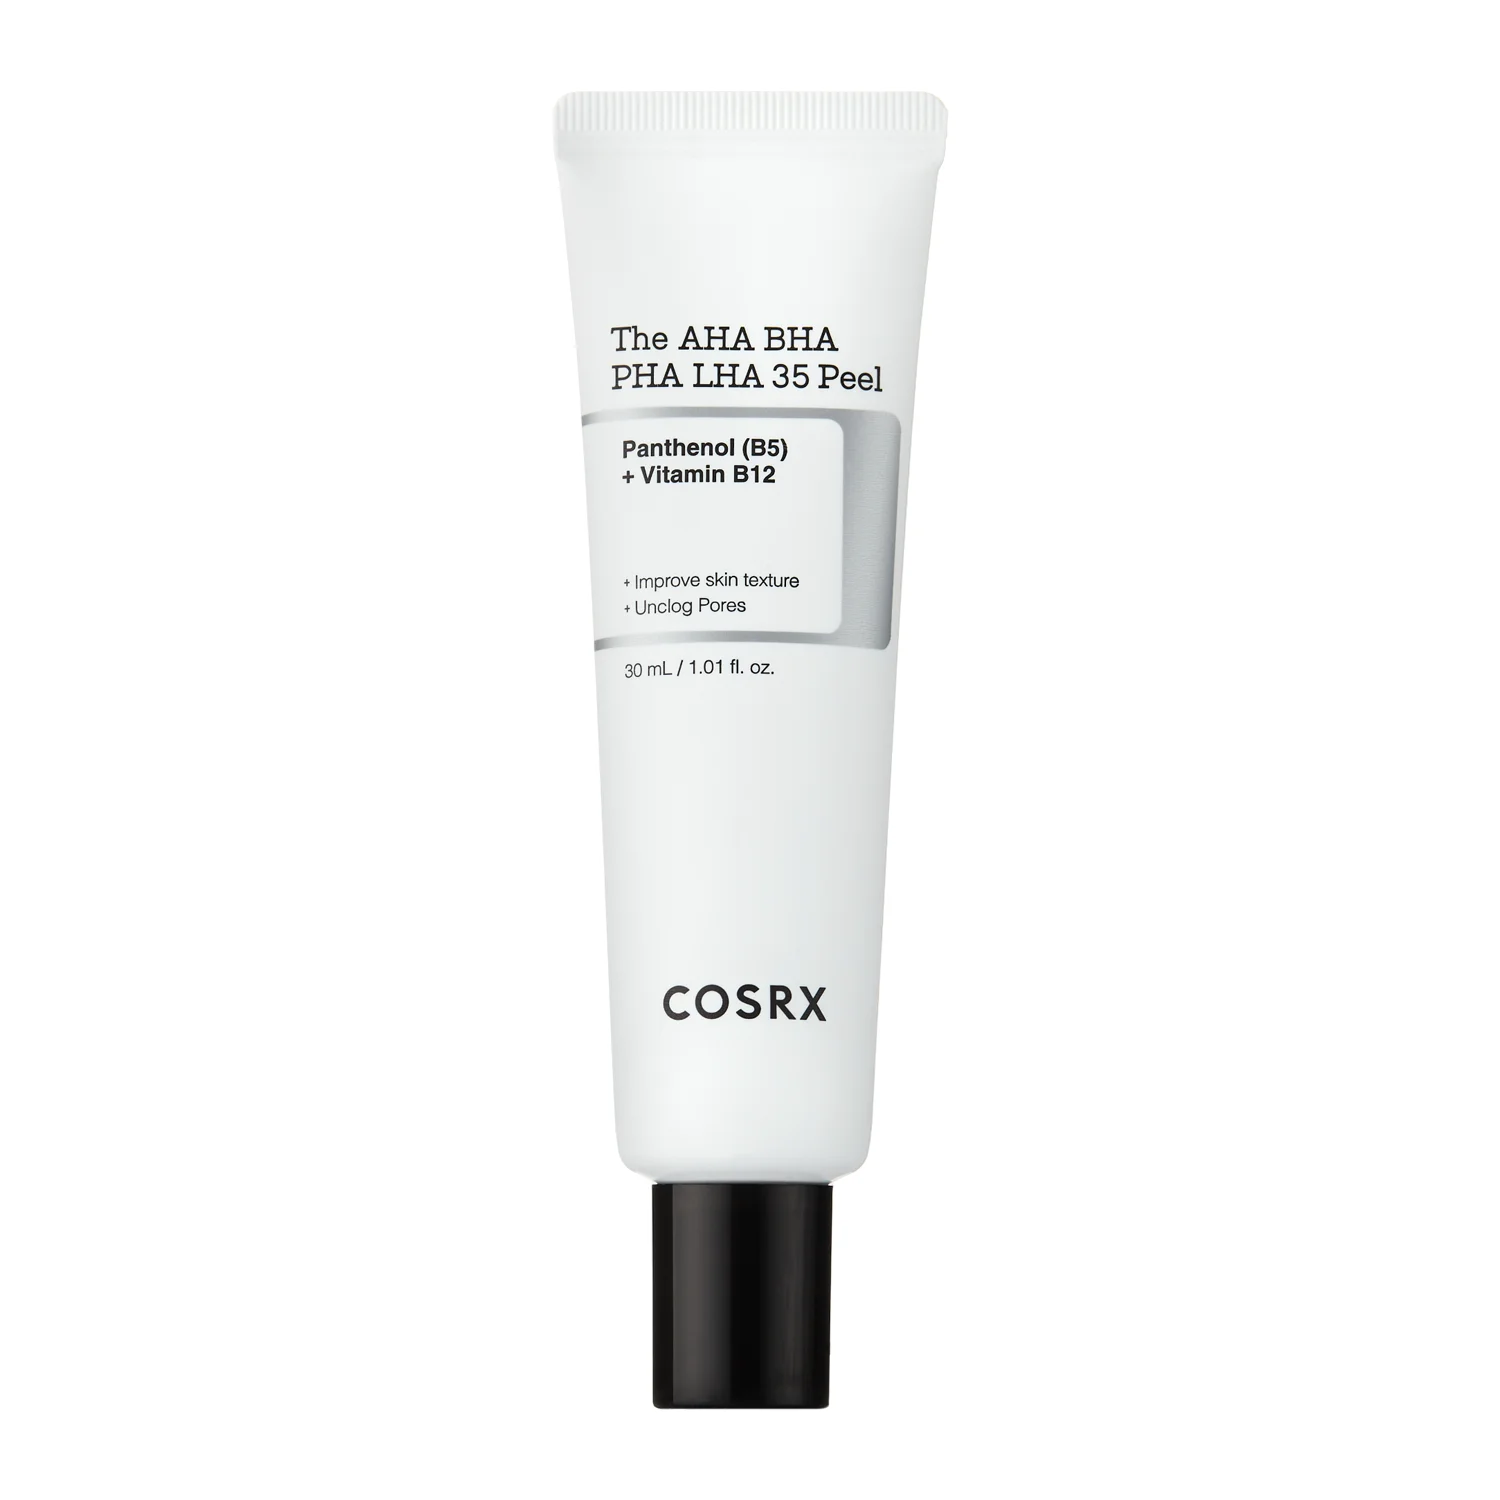 COSRX - The AHA BHA PHA LHA 35 Peel - 35% Savas Peeling Vitaminokkal - 30ml 